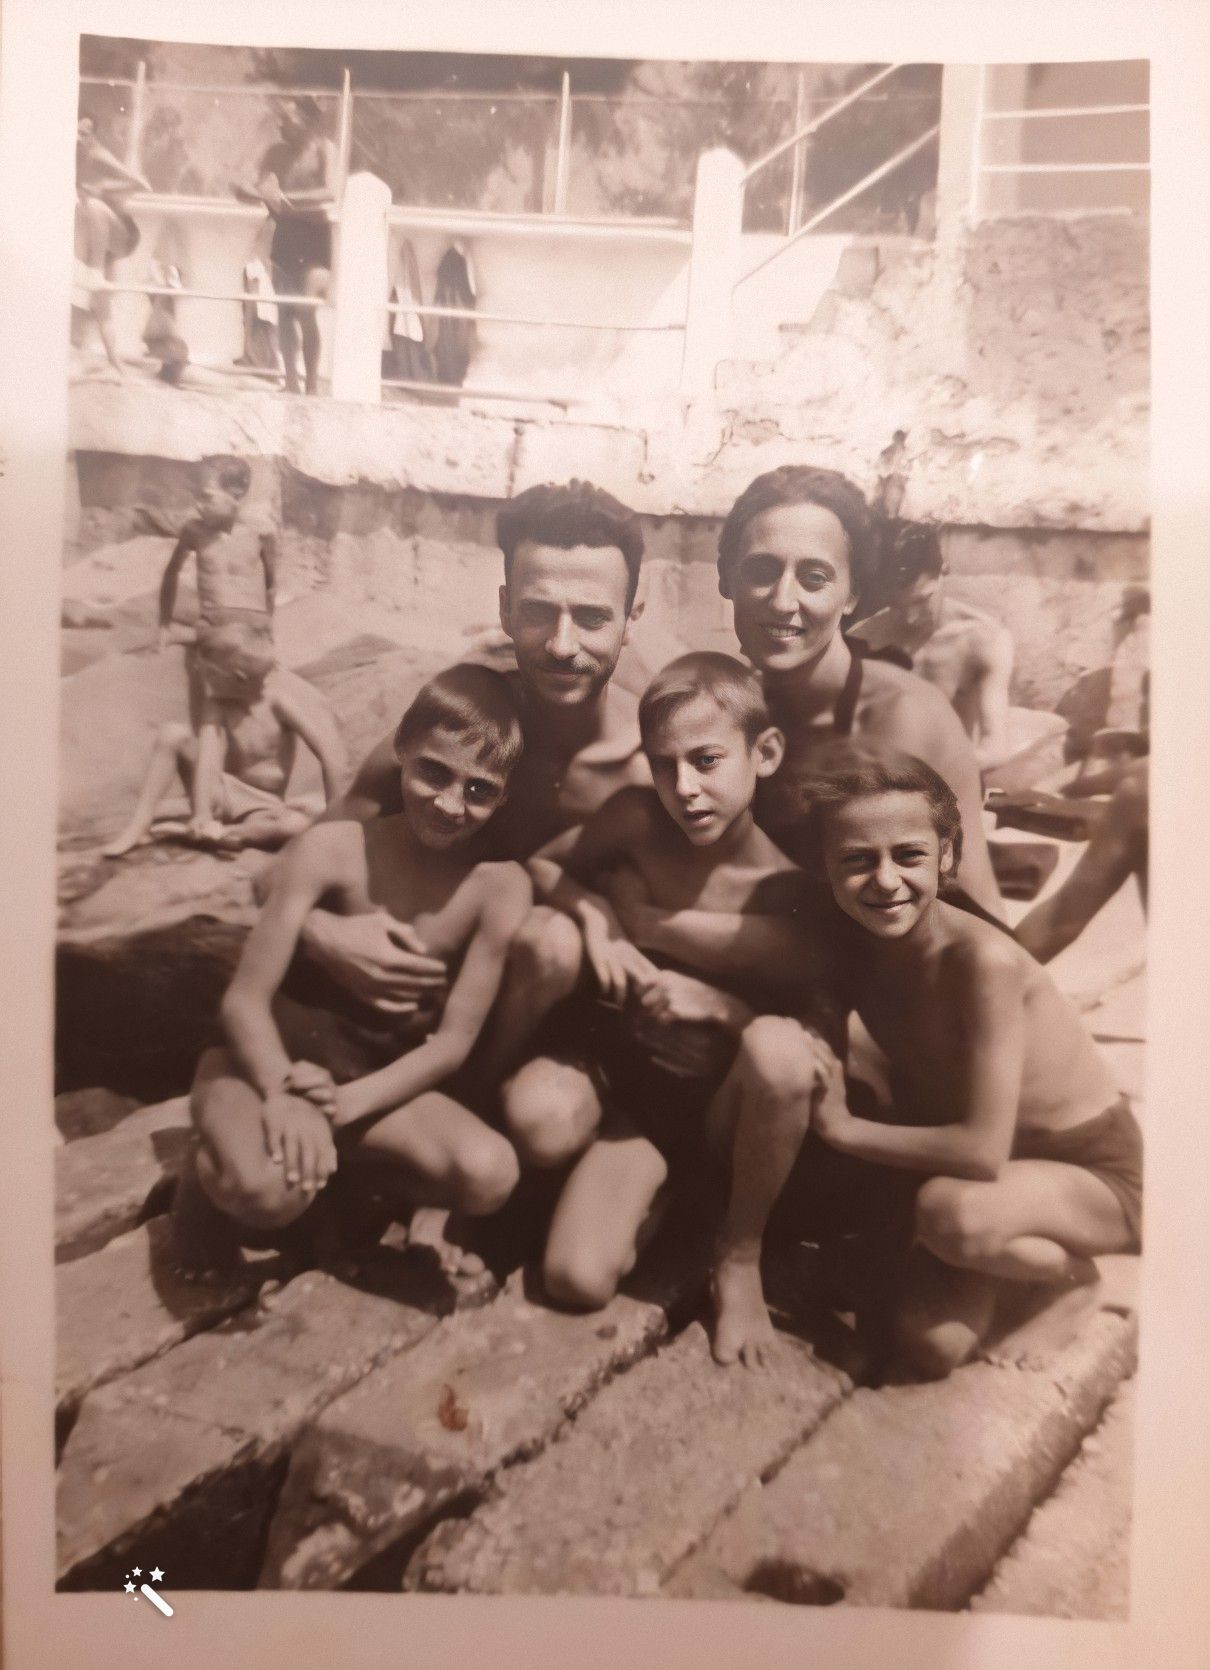 Daniele med familj (fotot är förbättrat av MyHeritage)